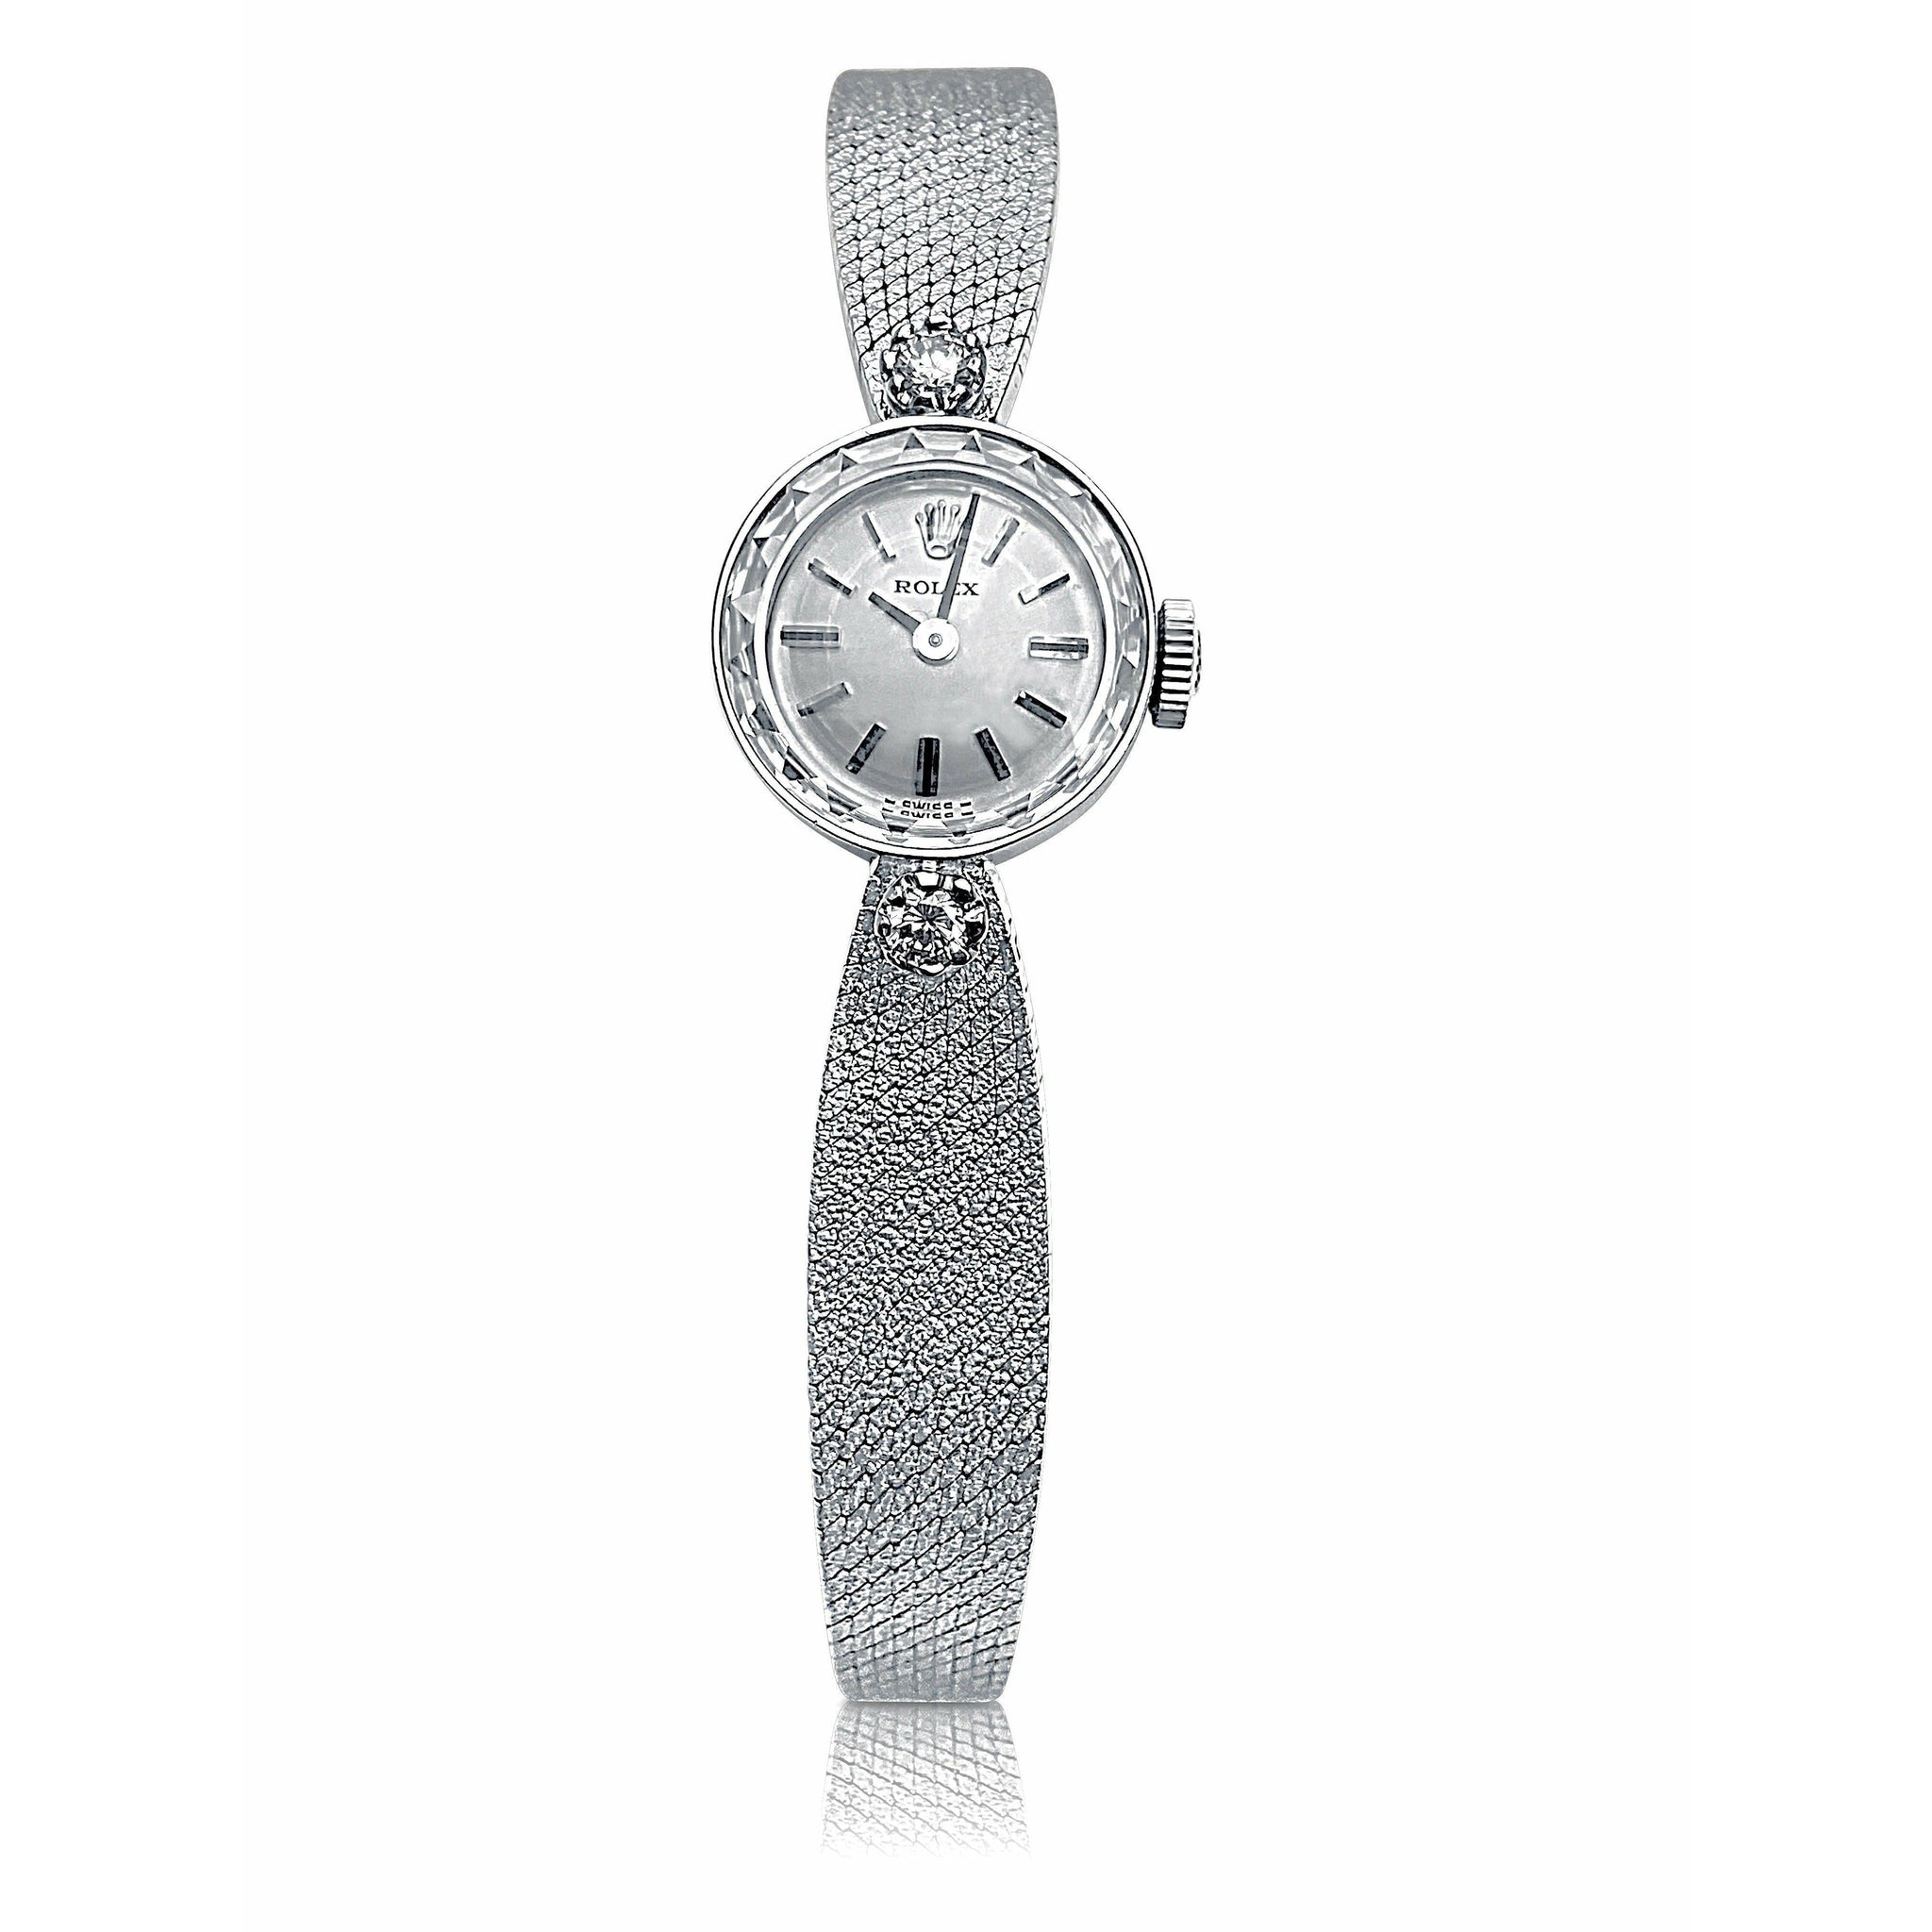 1950 Rolex Ladies Gold 15mm Rolex in 14k White Gold champagne textured integral strap watch-watch-ASSAY